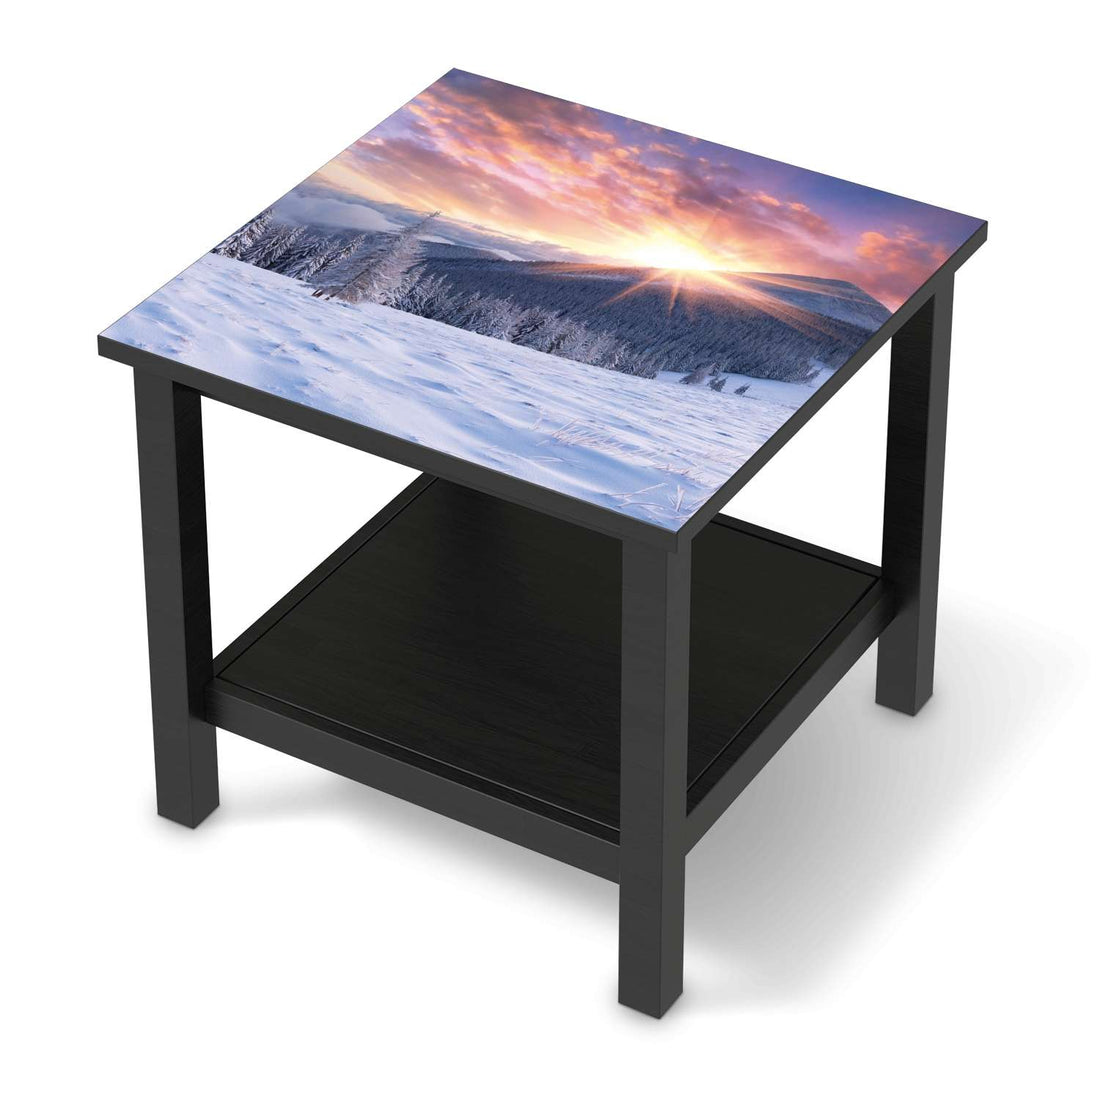 Möbel Klebefolie Zauberhafte Winterlandschaft - IKEA Hemnes Beistelltisch 55x55 cm - schwarz